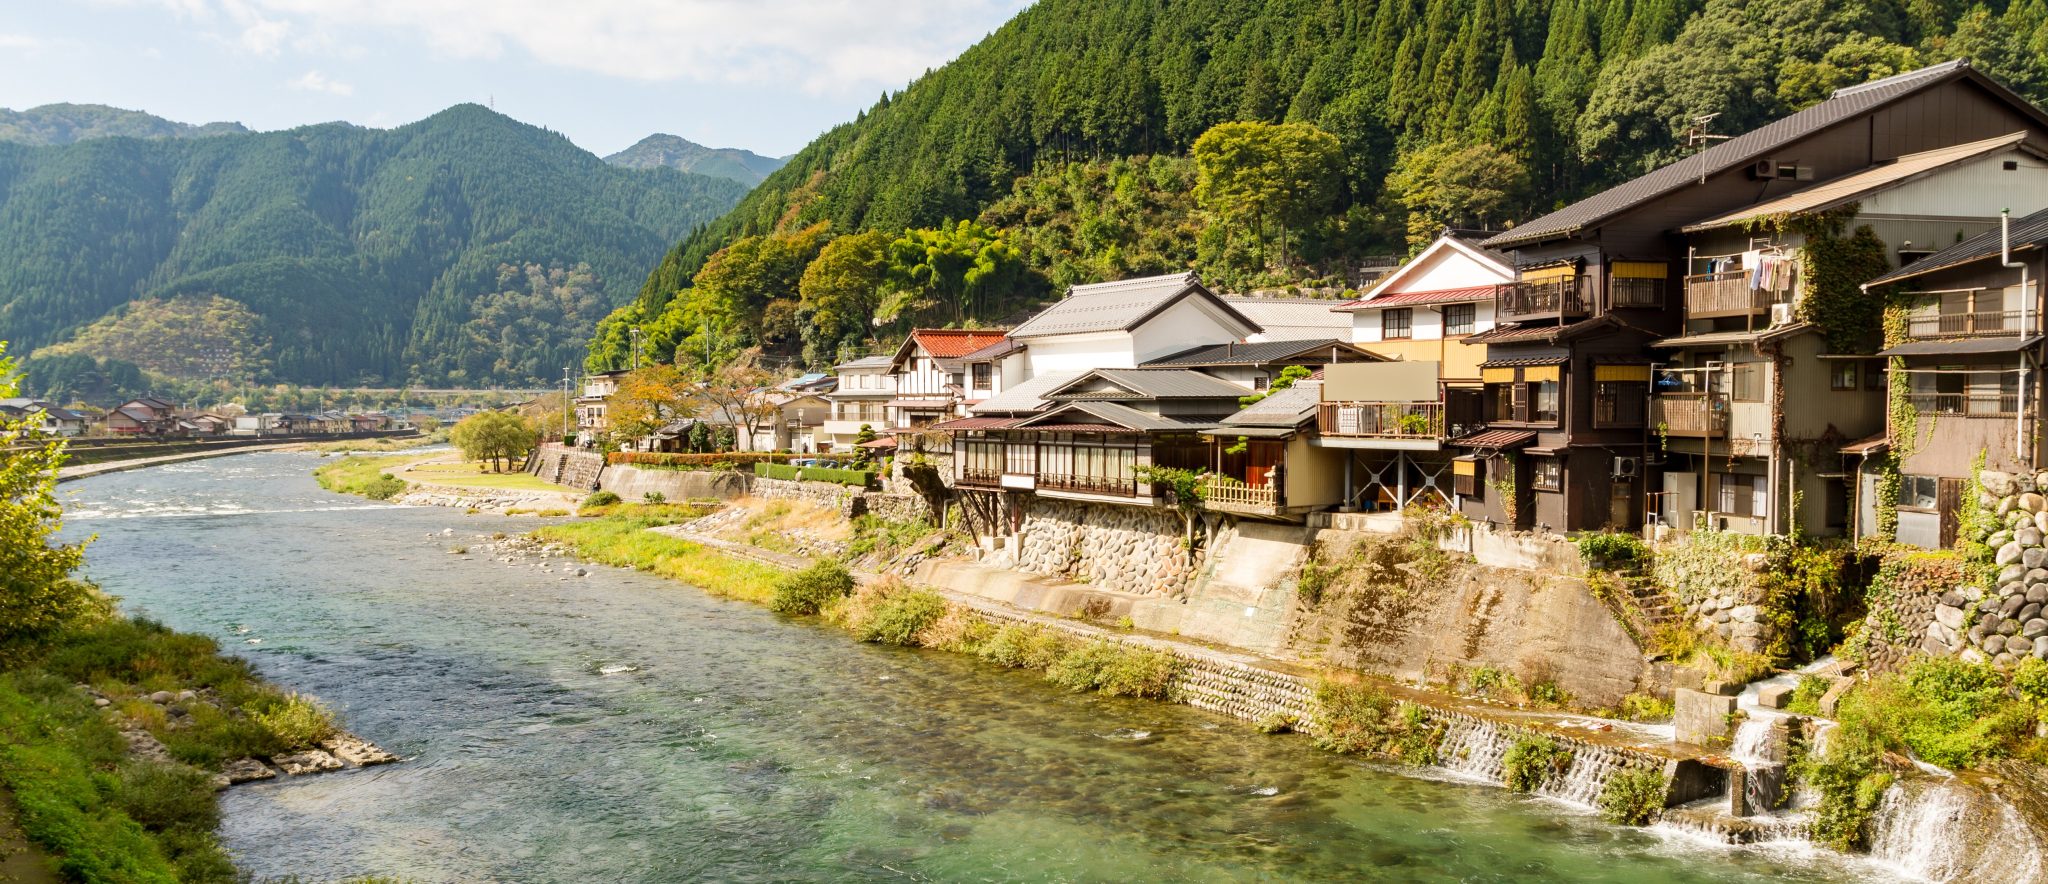 8 Prettiest Towns in Japan